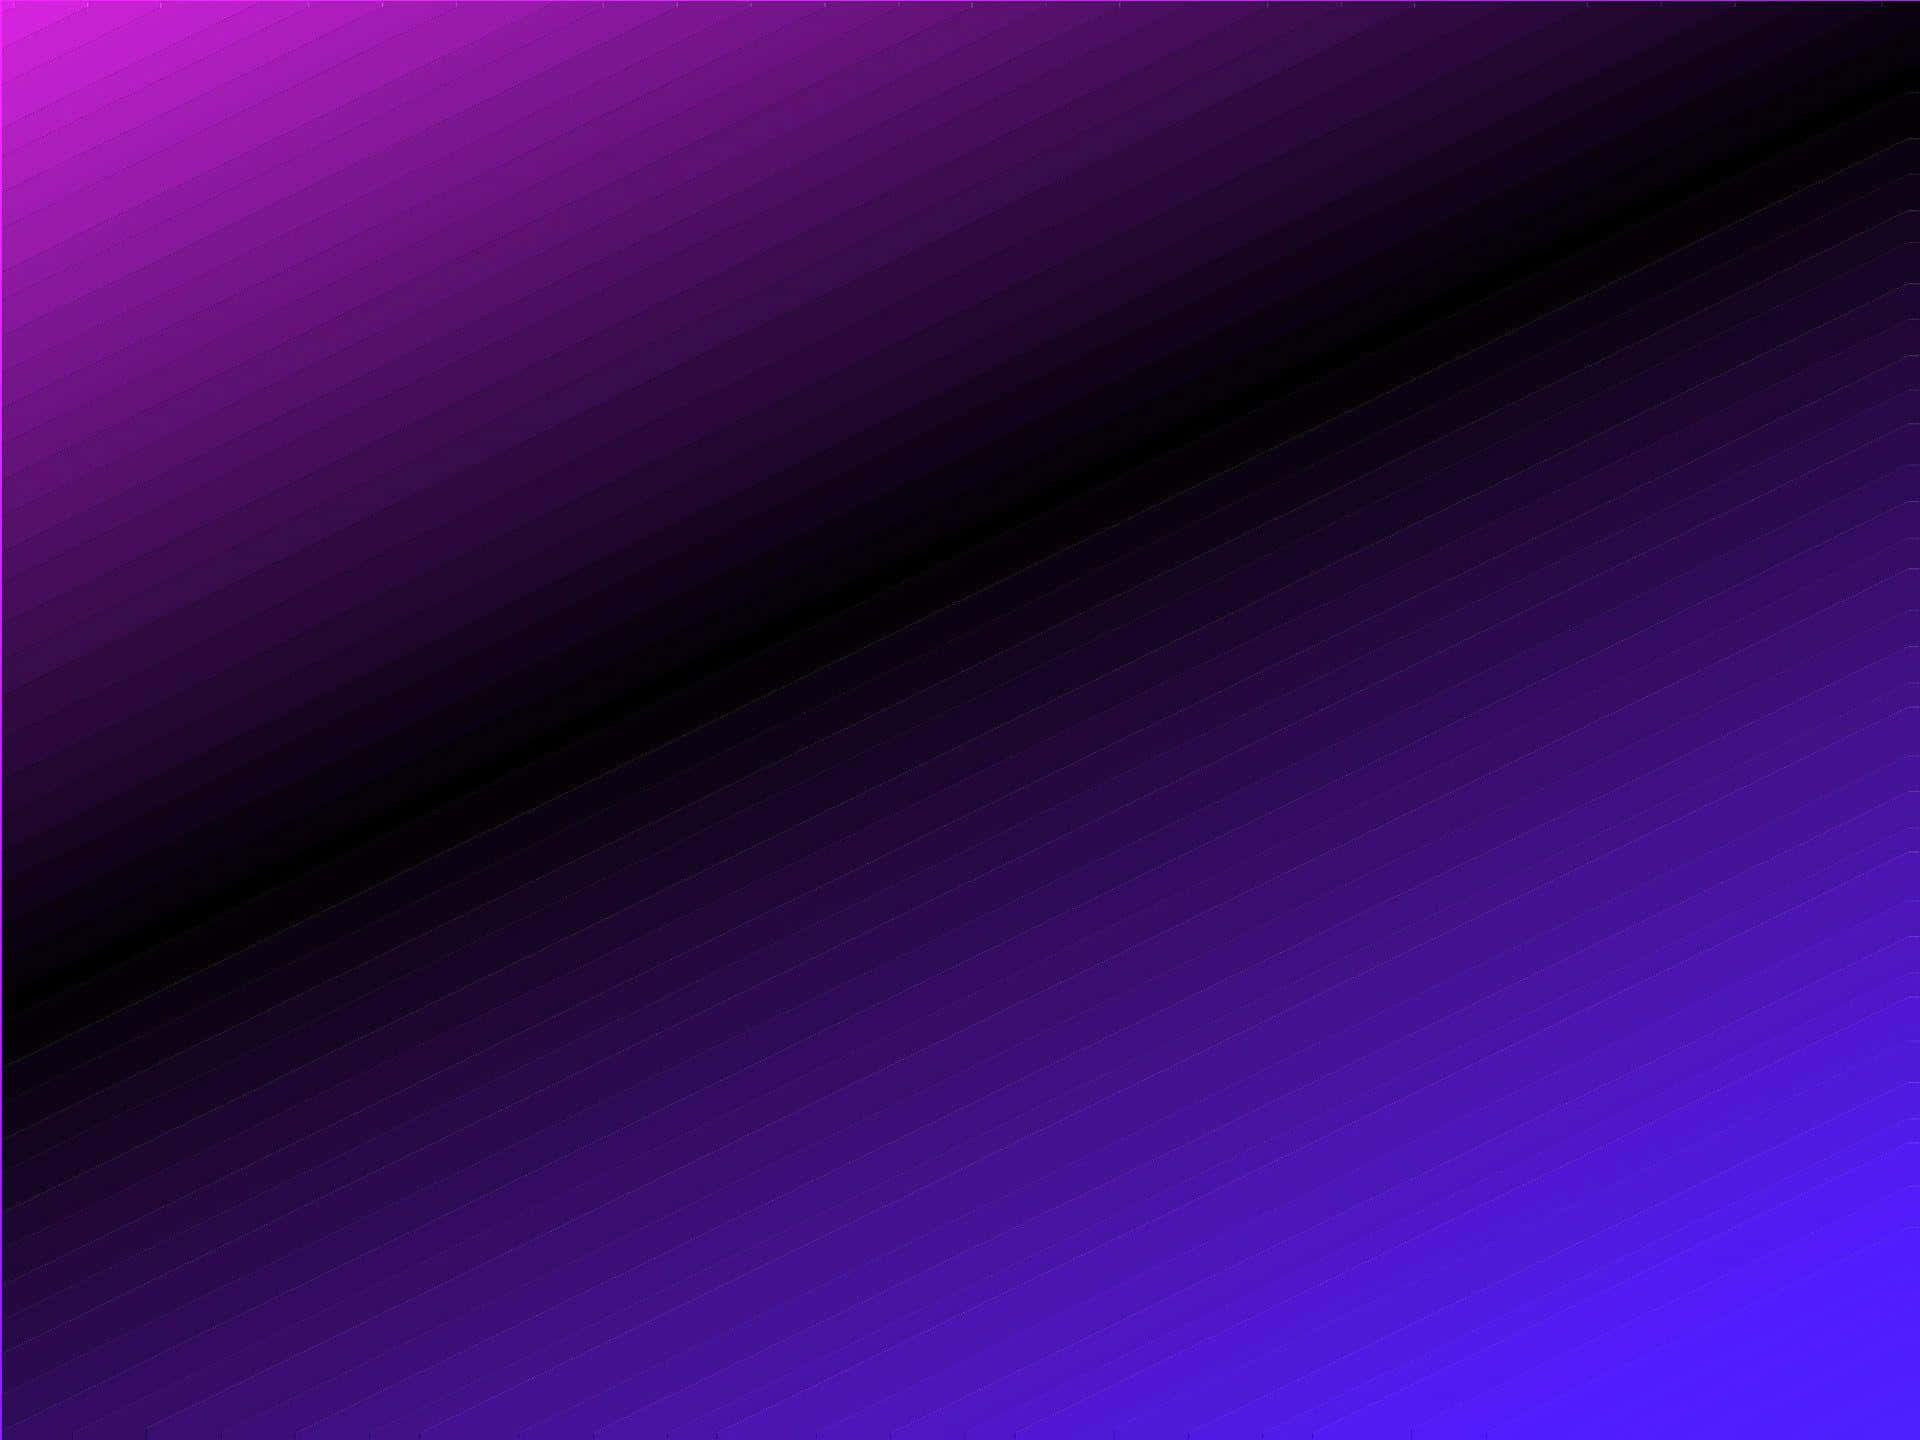 Flowing purple texture in gradient